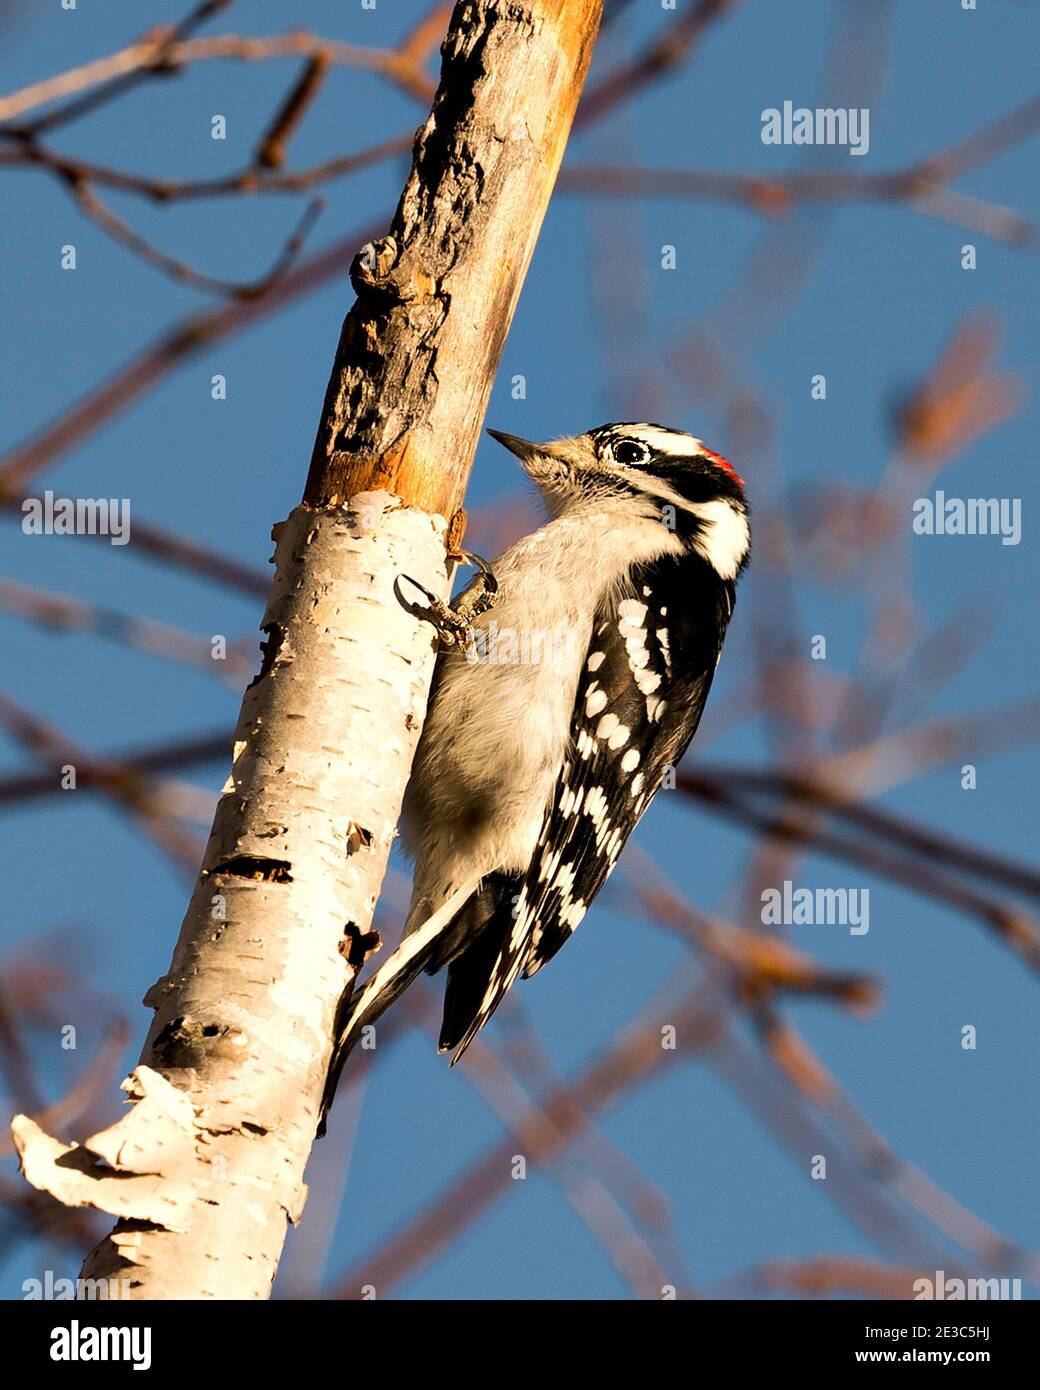 Woodpecker appollaiato con piumaggio di piume di colore bianco e nero, nel suo ambiente e habitat nella foresta con uno sfondo sfocato. Immagine. Foto Stock